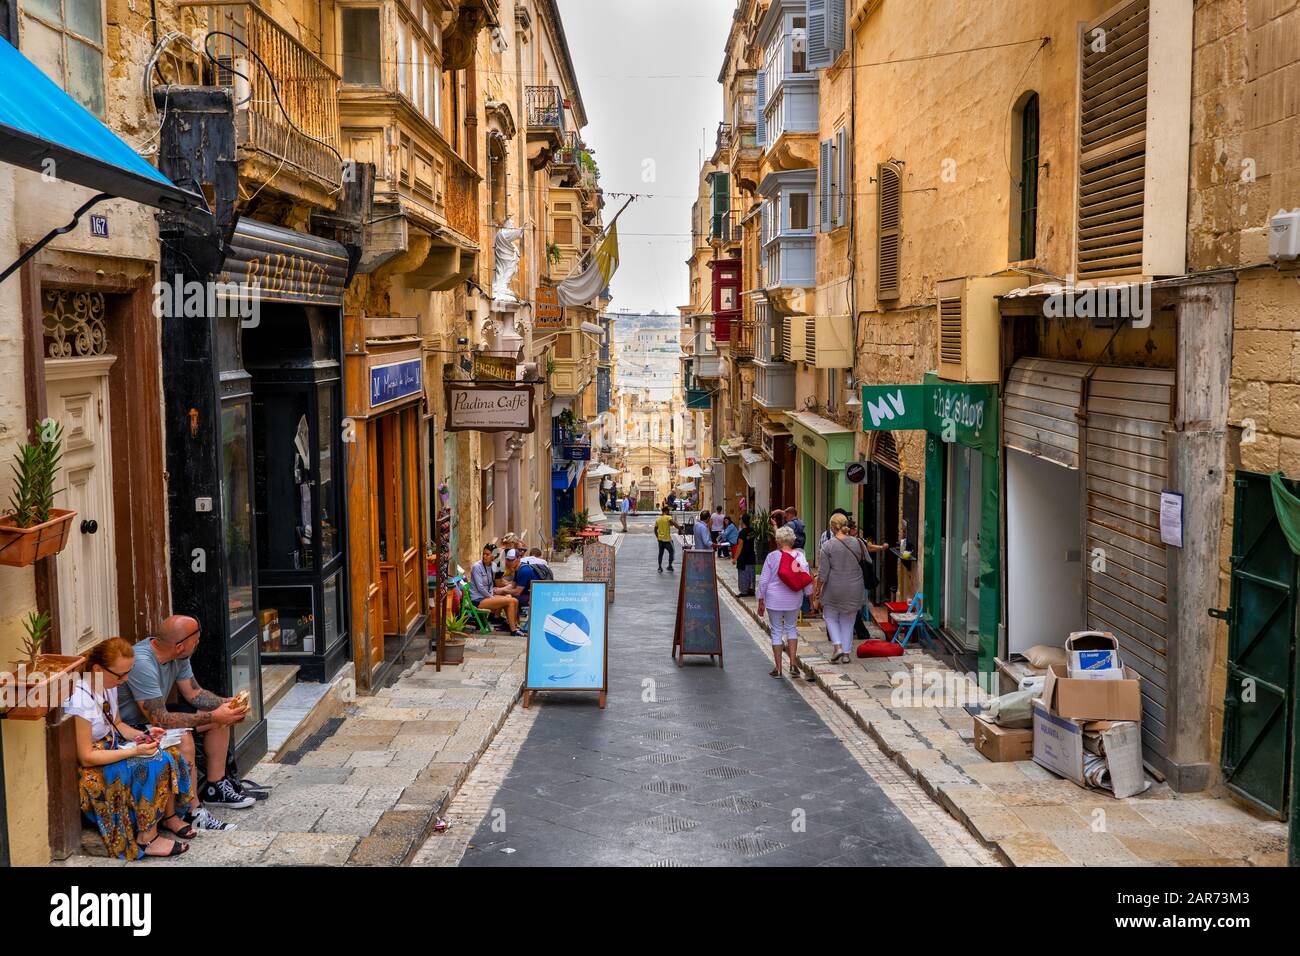 St Lucia Street in Valletta city, Malta Stock Photo